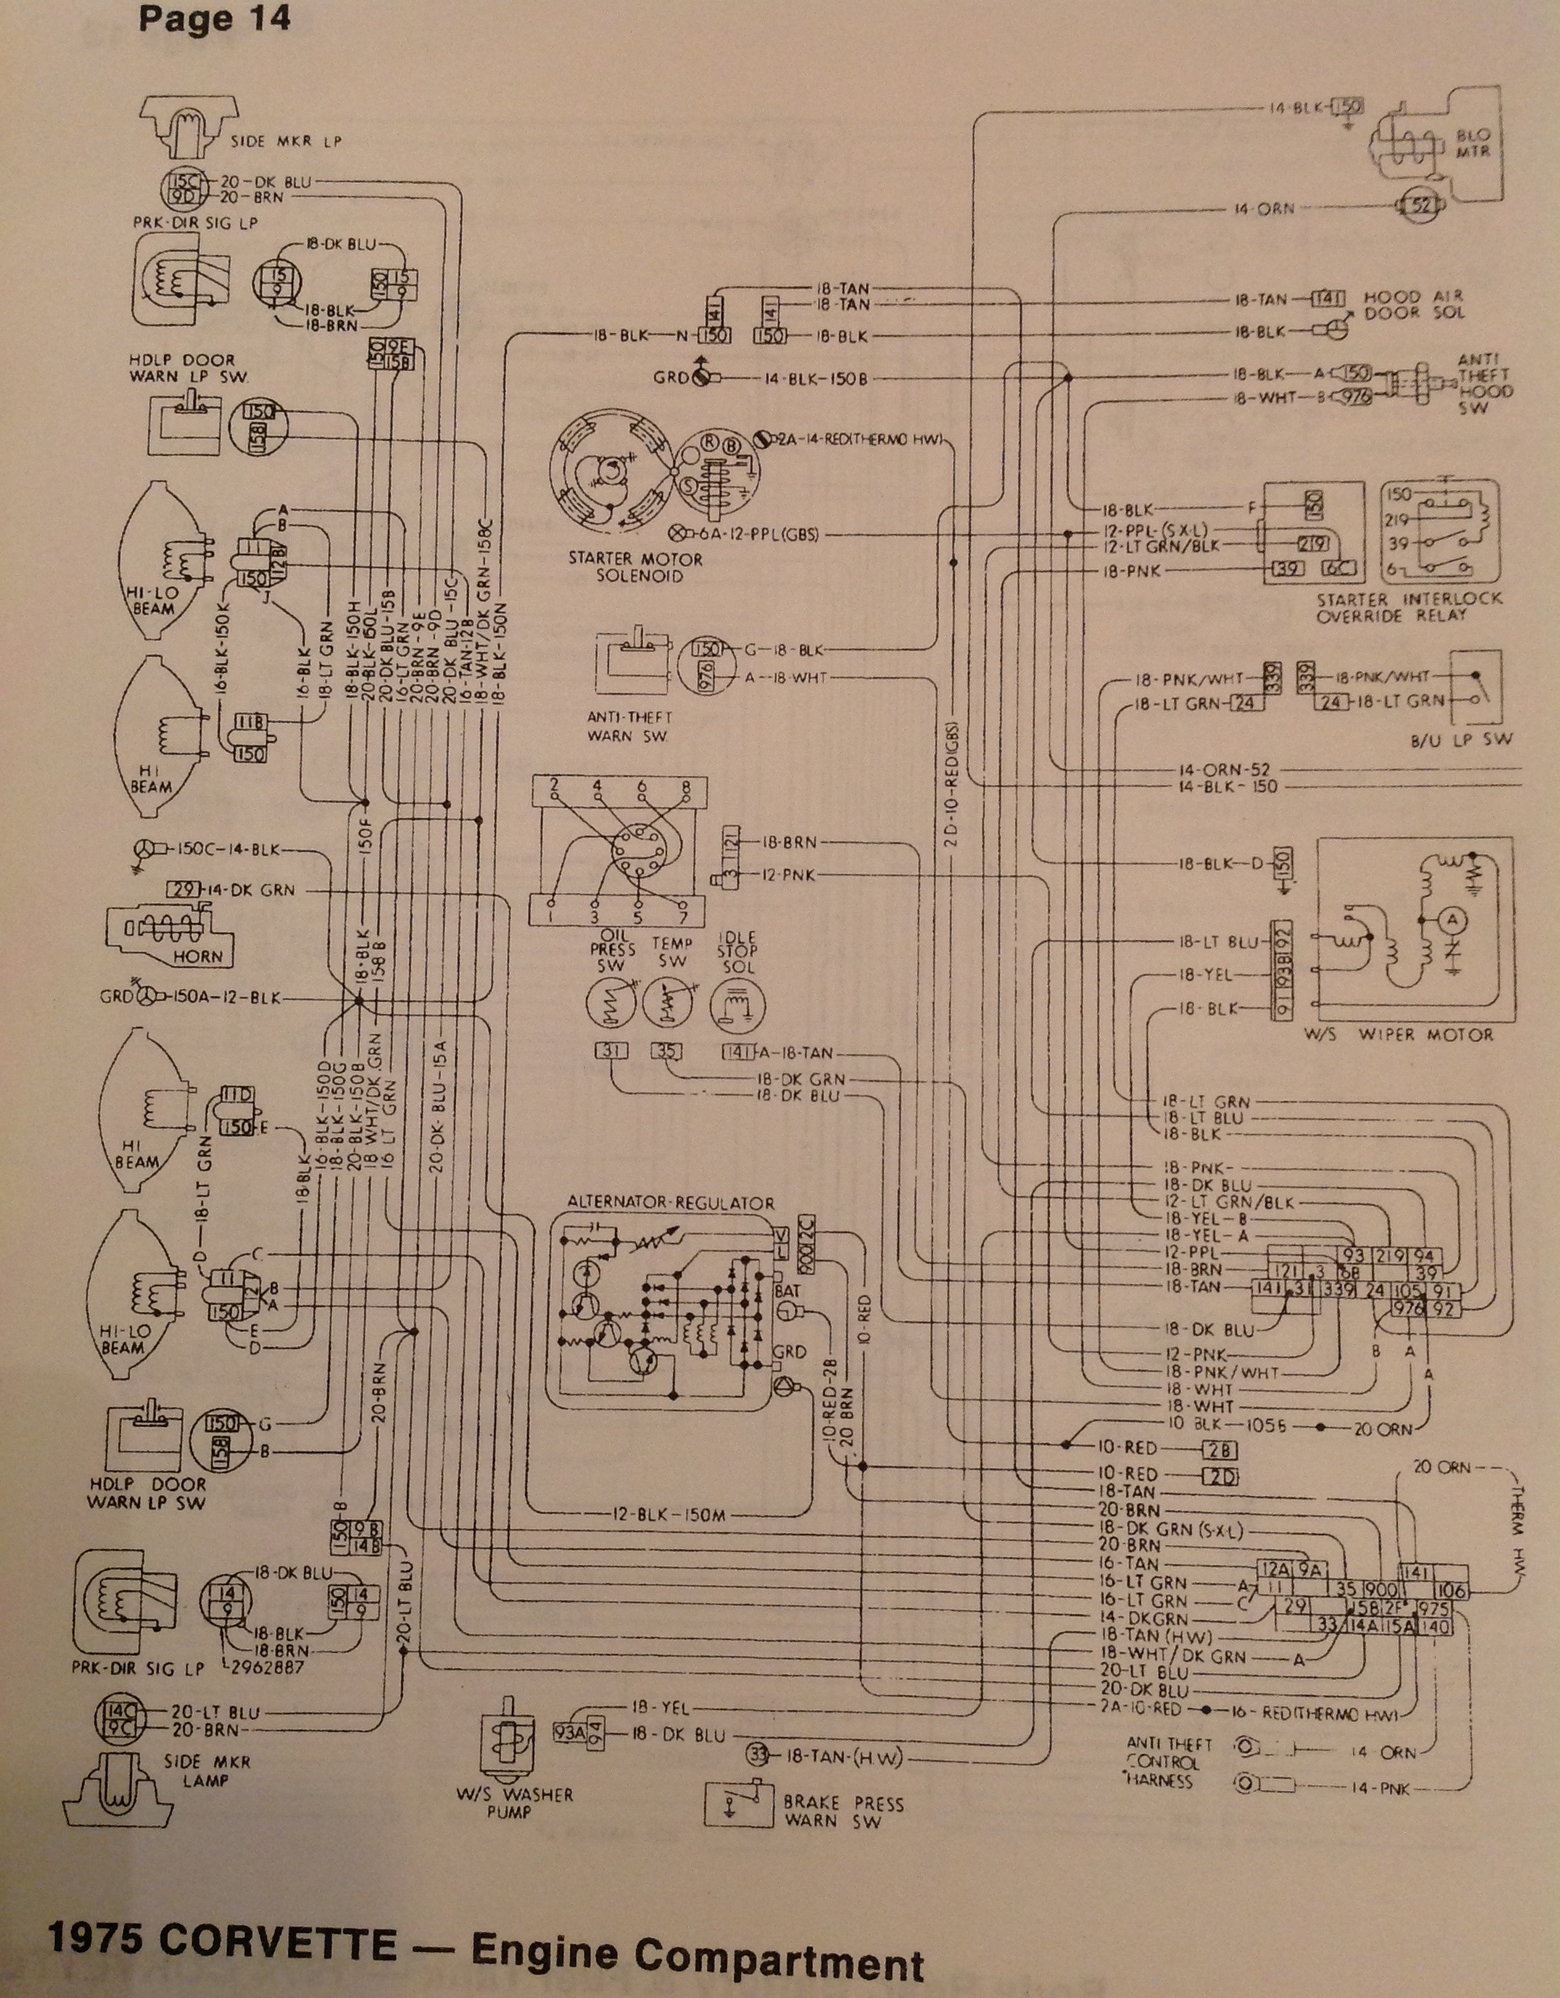 1975 wiring diagram - CorvetteForum - Chevrolet Corvette Forum Discussion